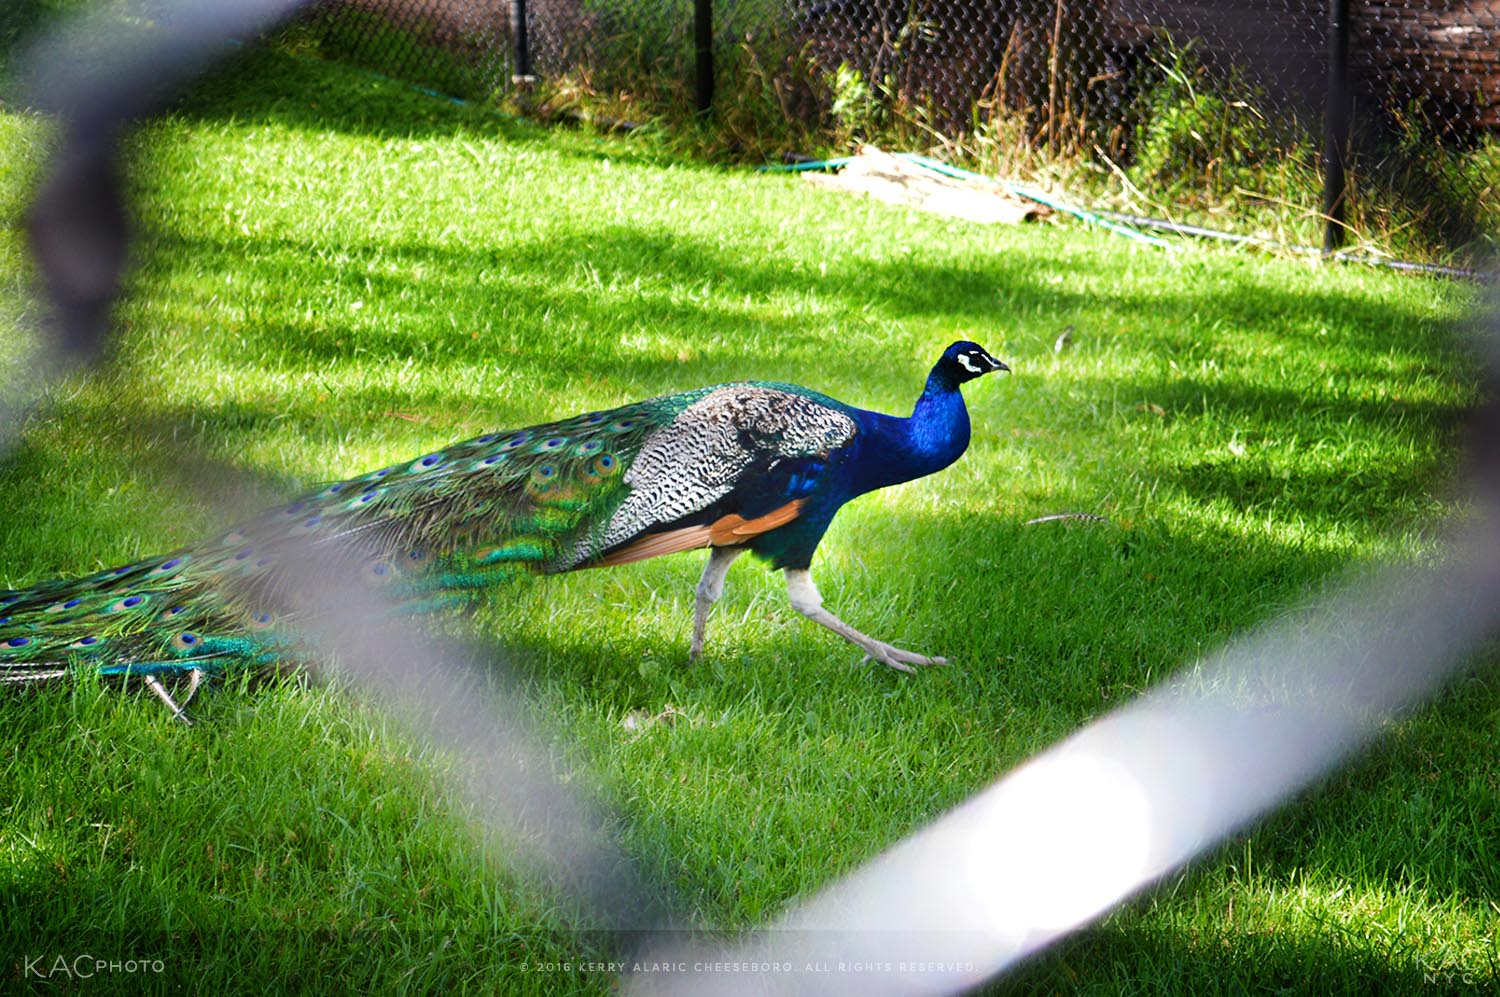 kac_photo-160822-illinois-phillips-park-zoo-peacock-1500.jpg